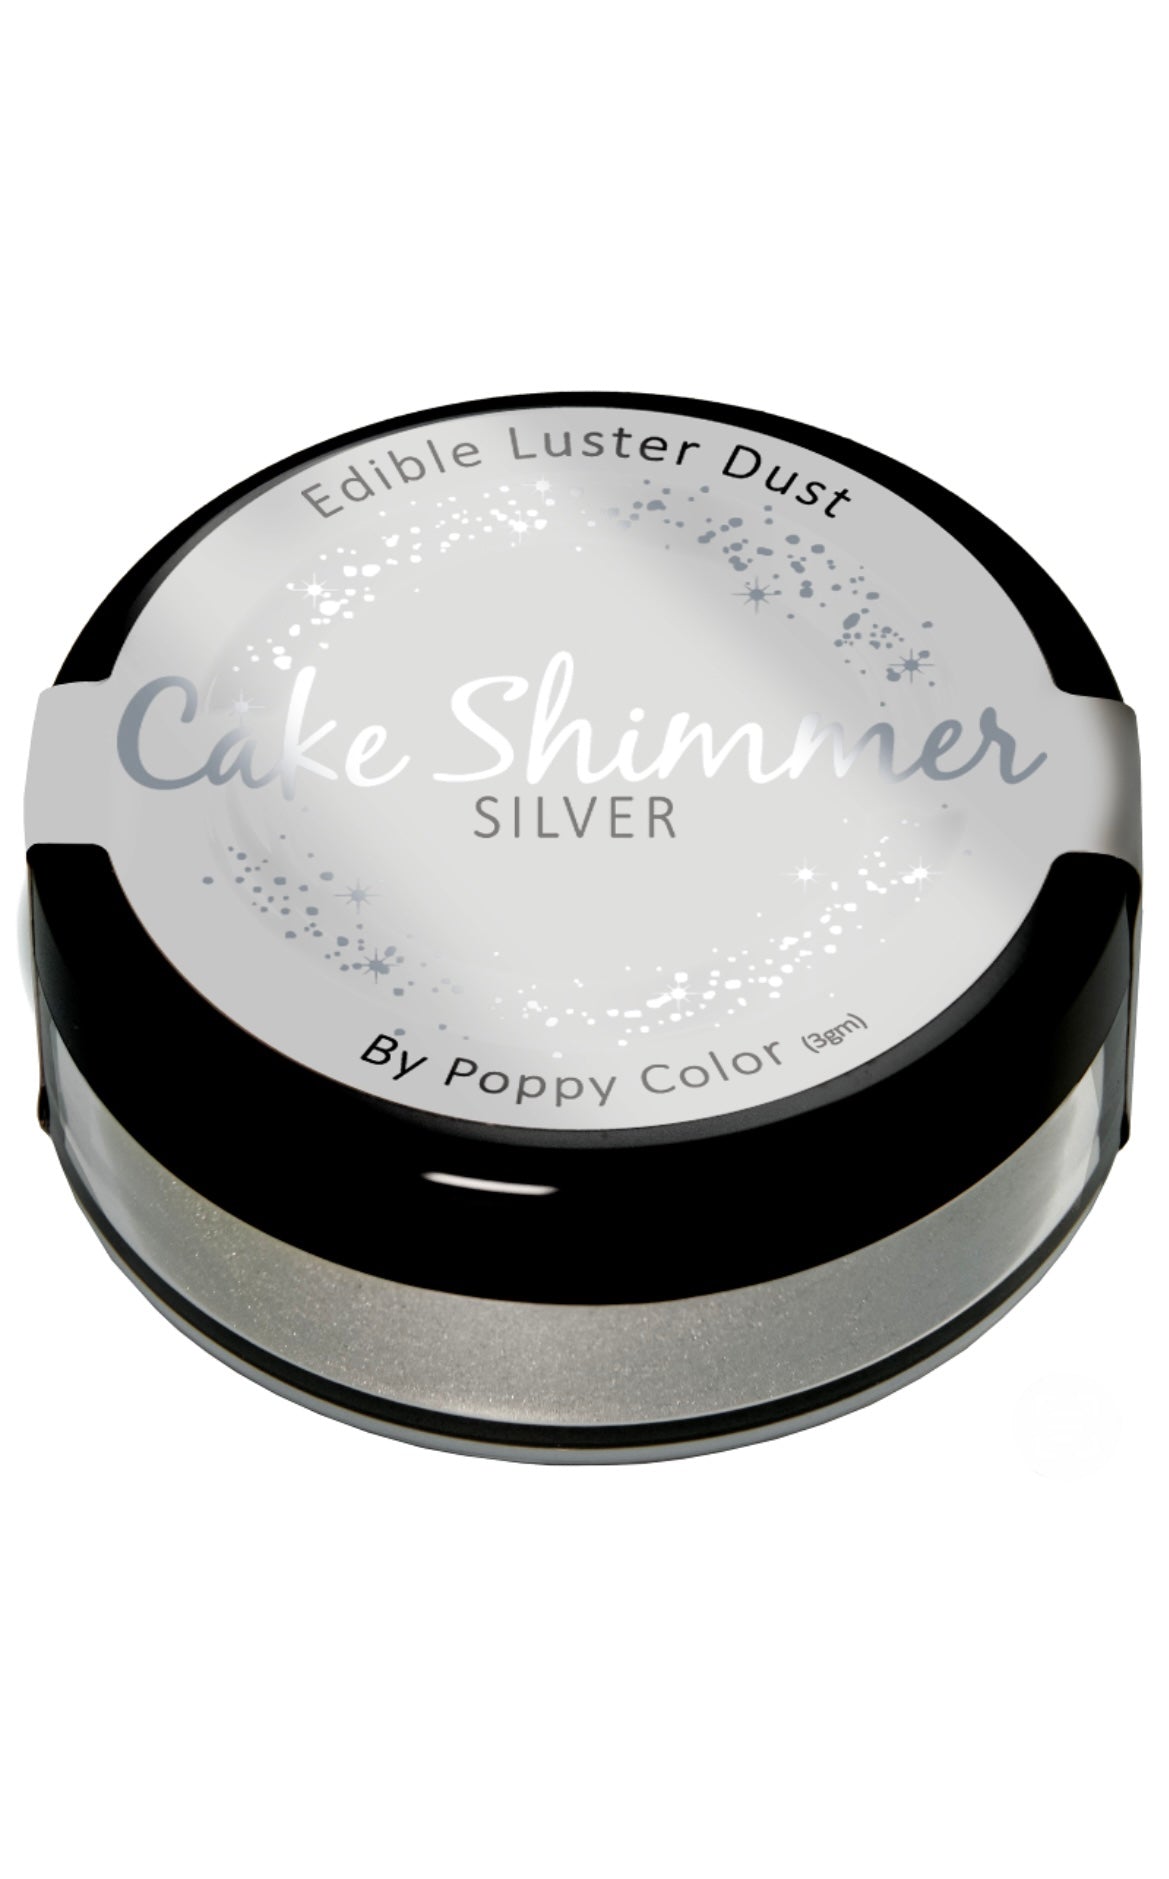 Luster Dust Cake Shimmer Silver